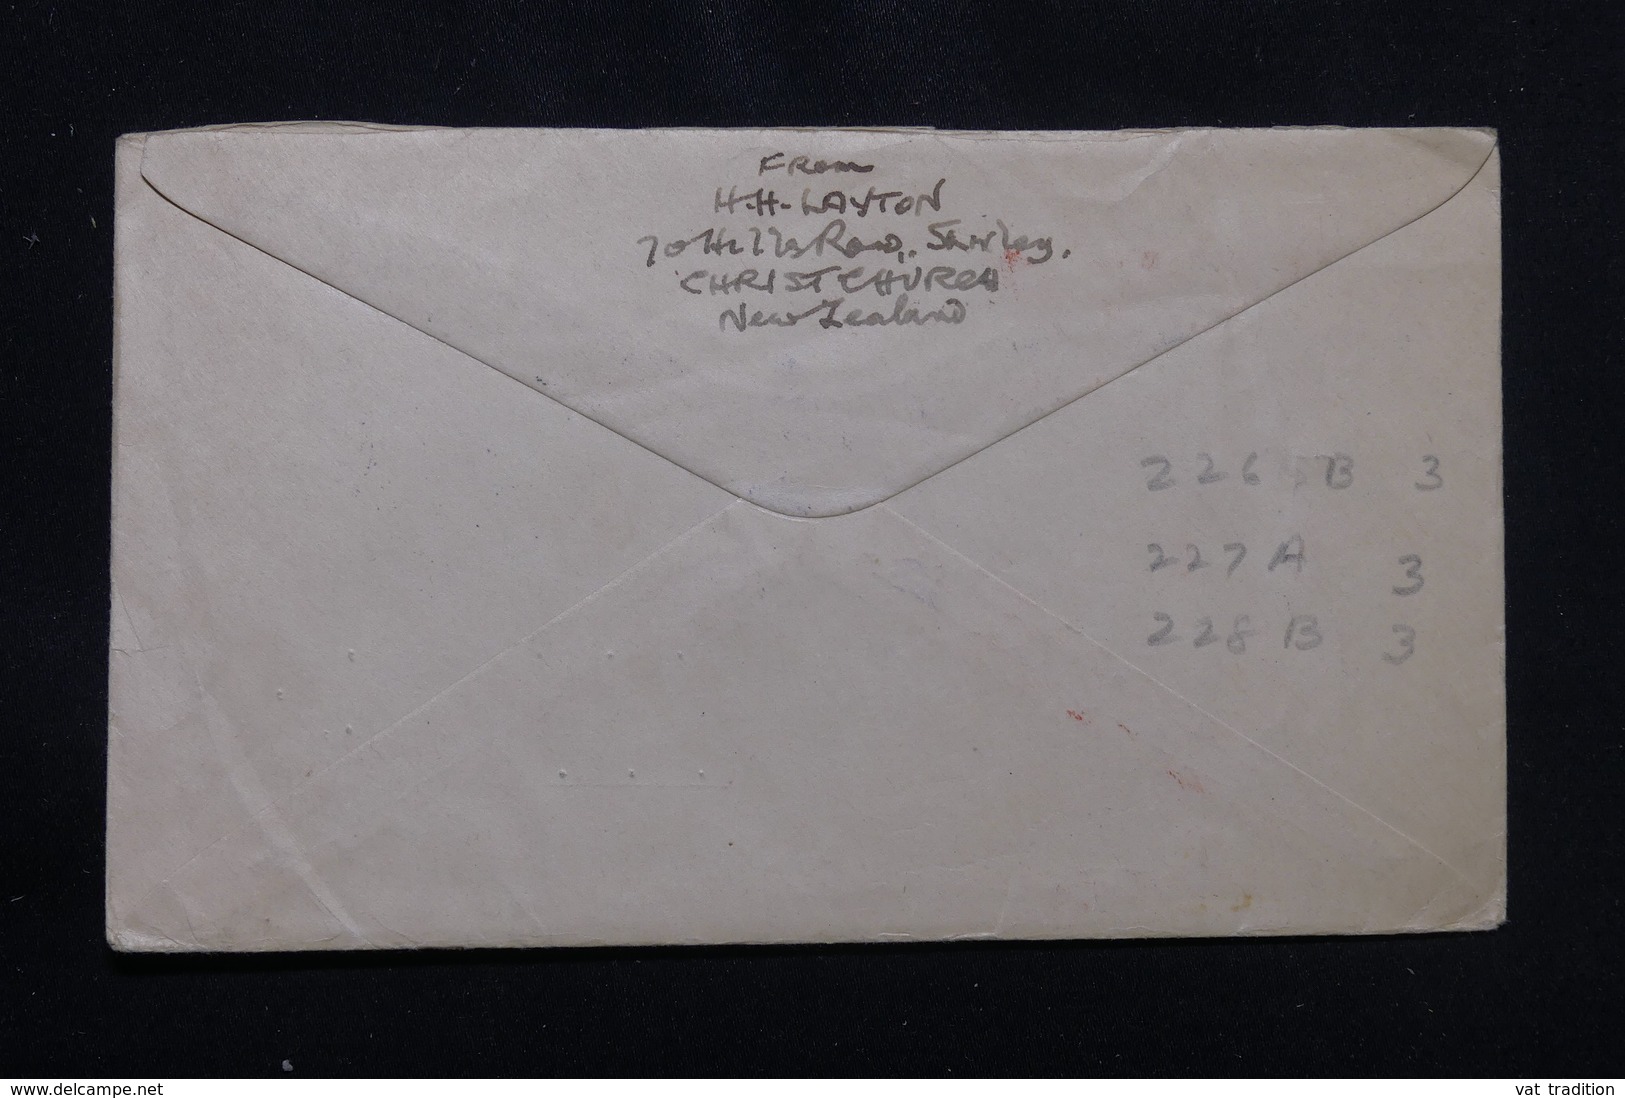 NOUVELLE ZÉLANDE - Enveloppe Souvenir De La Paix En 1945 Pour Les U.S.A., Affranchissement Plaisant - L 57231 - Covers & Documents